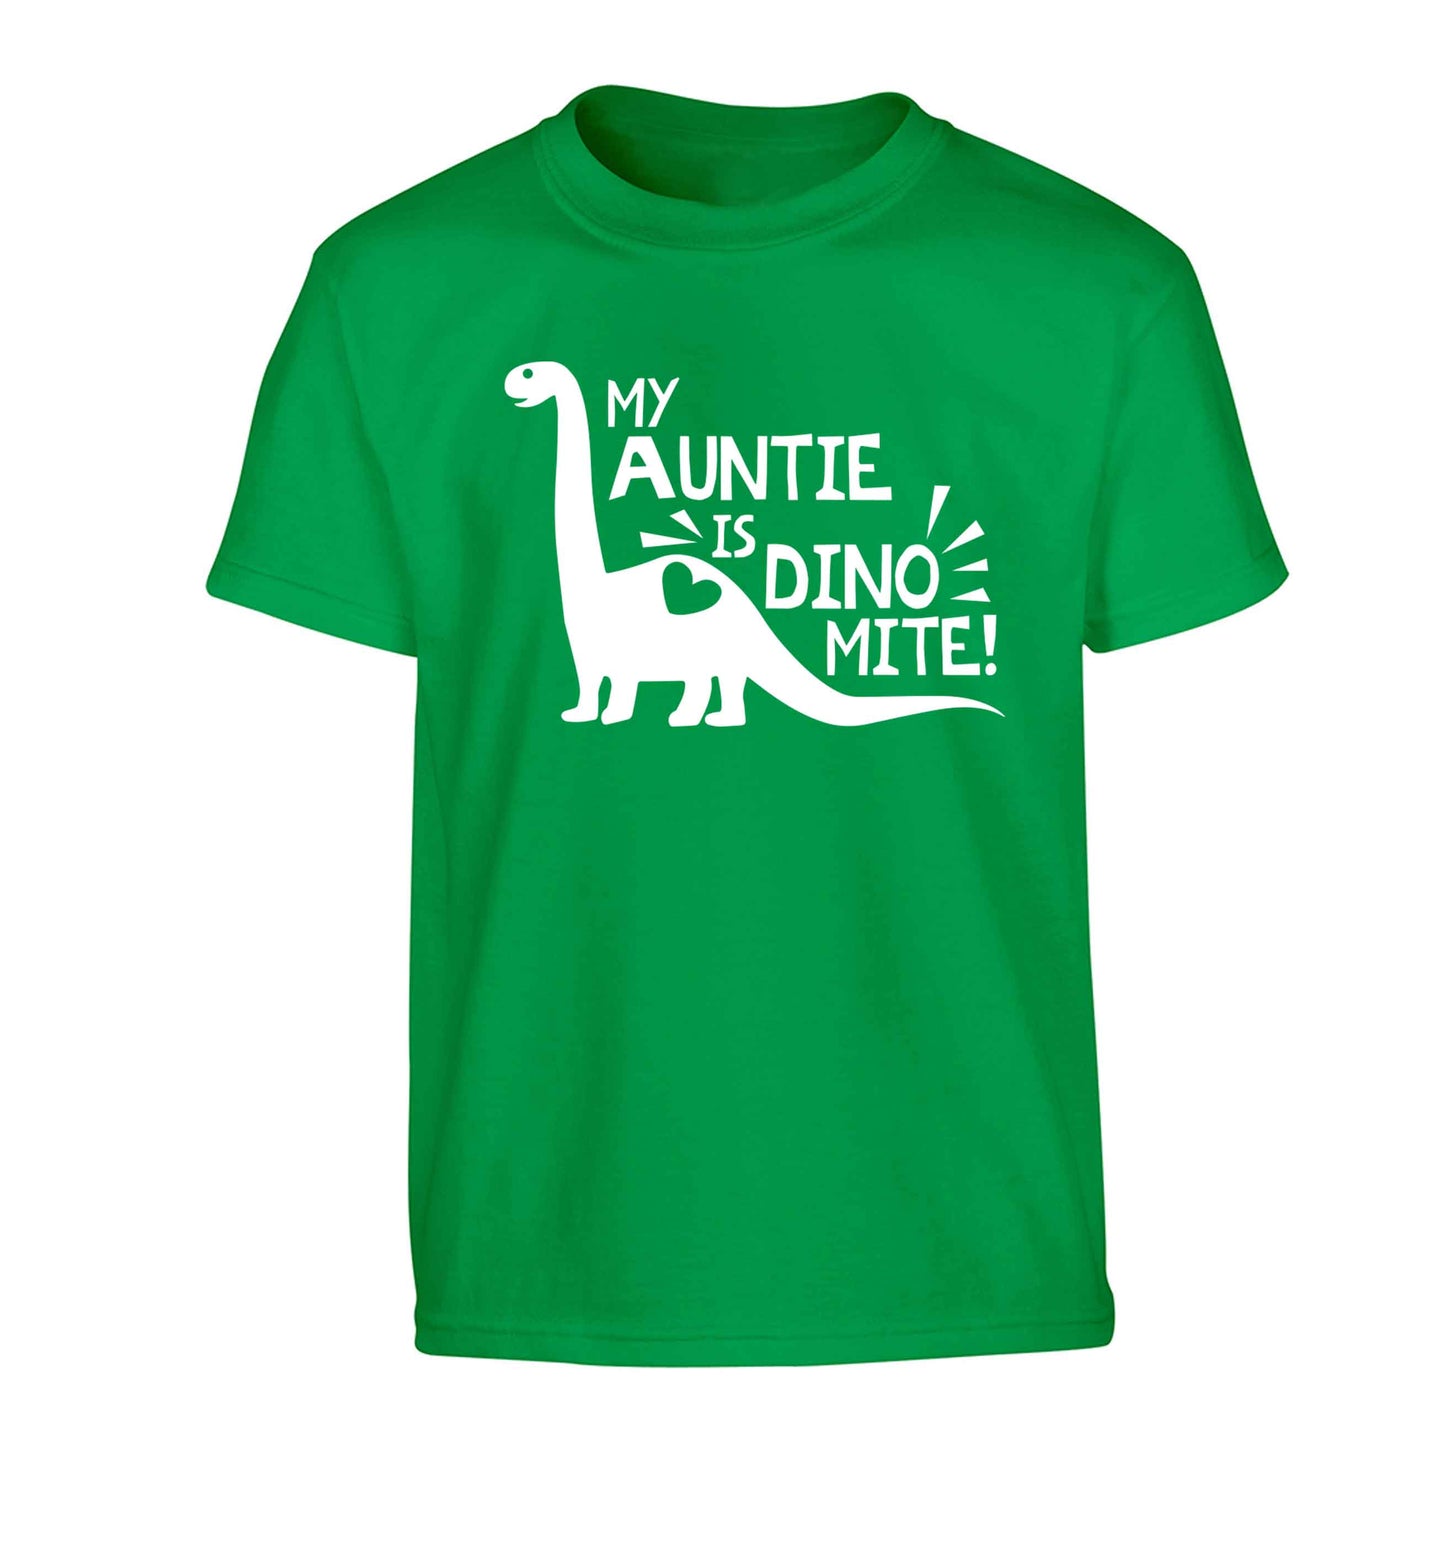 My auntie is dinomite! Children's green Tshirt 12-13 Years